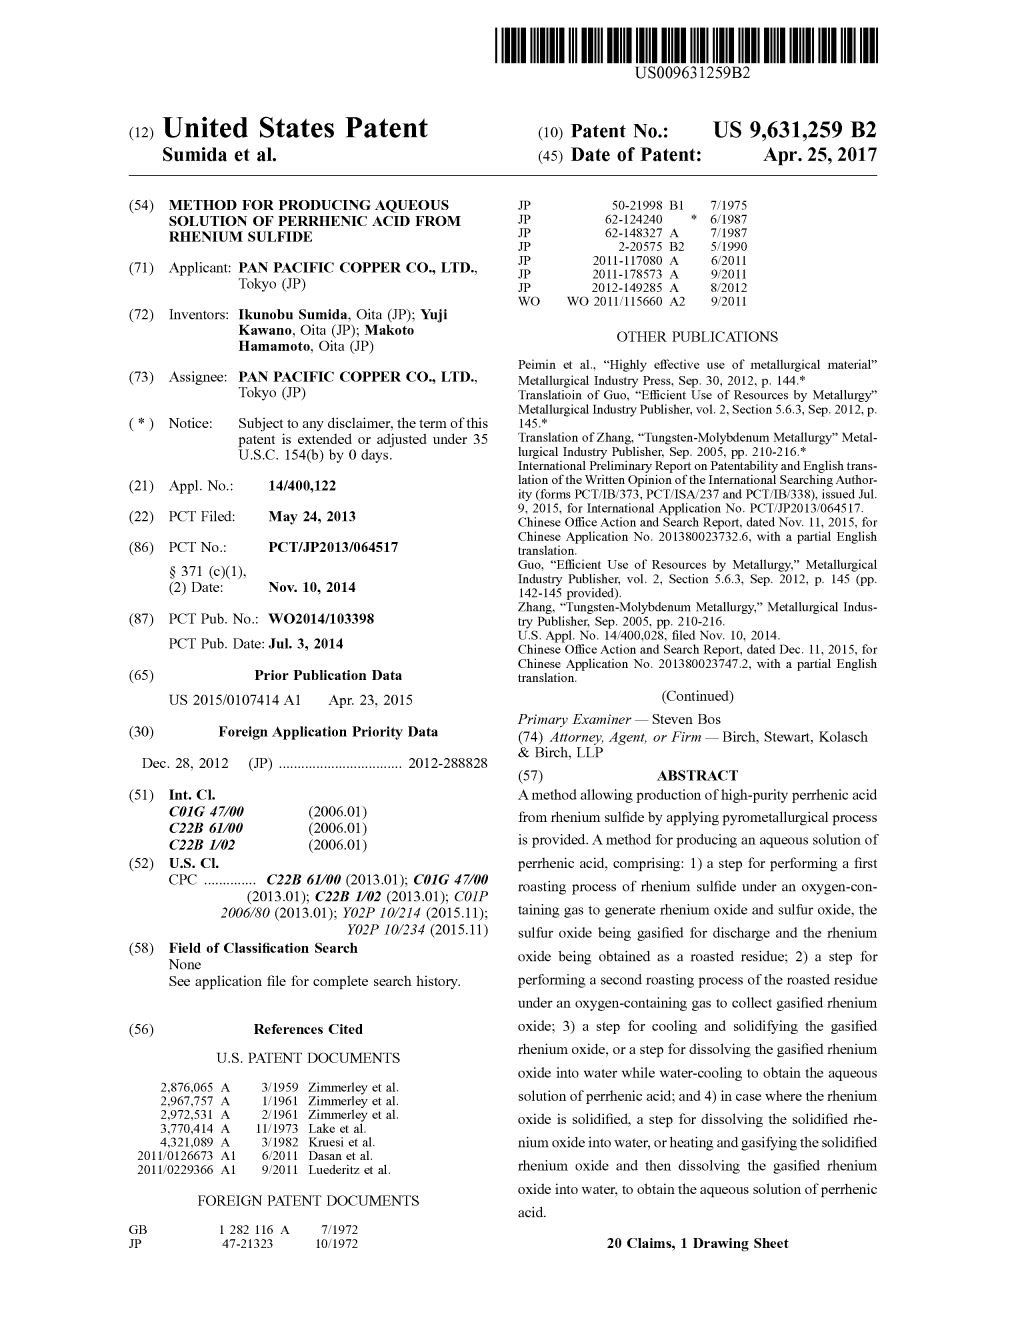 (12) United States Patent (10) Patent No.: US 9,631,259 B2 Sumida Et Al